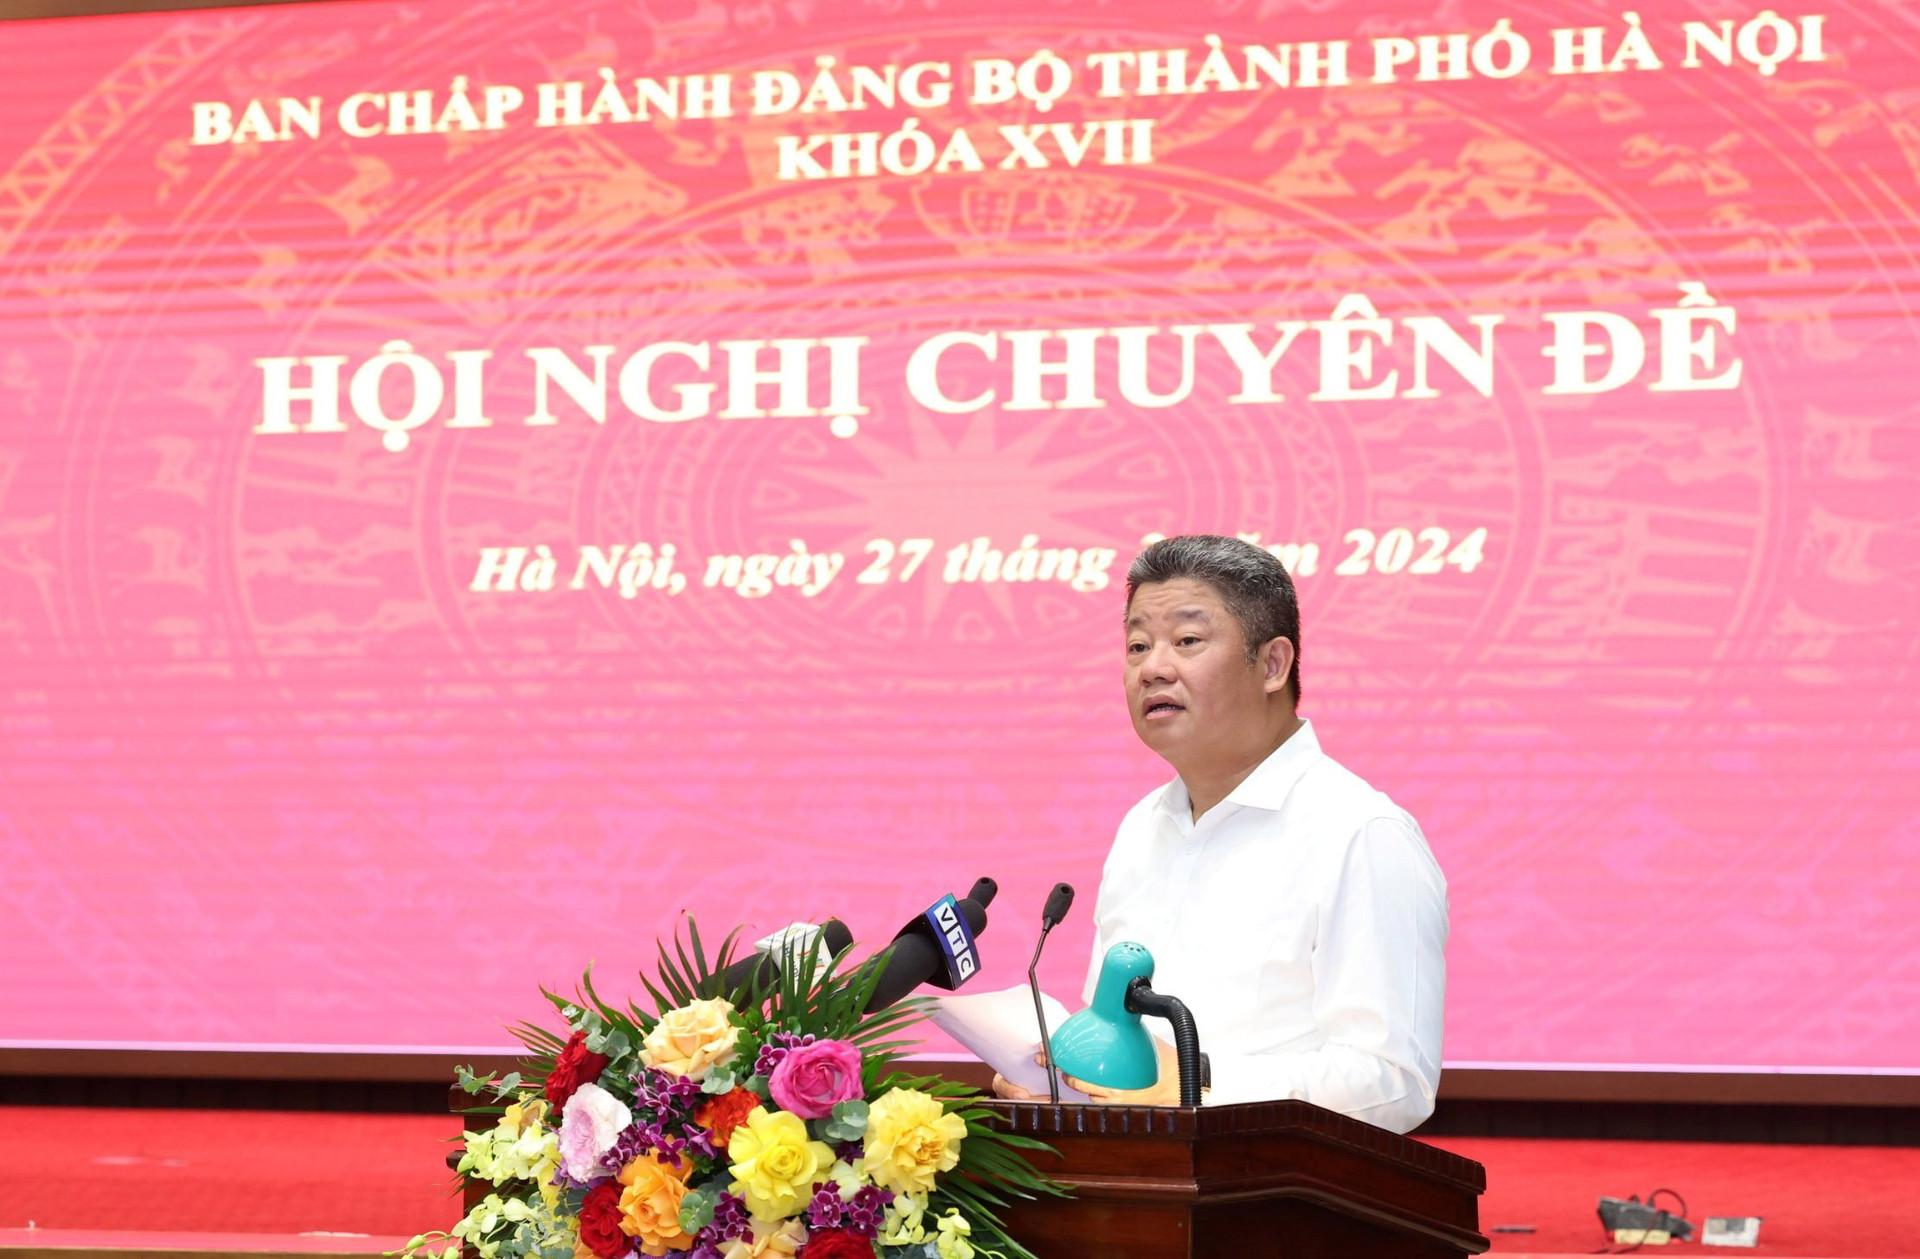 Phó Chủ tịch UBND thành phố Nguyễn Mạnh Quyền giải trình về hai nội dung các đại biểu cho ý kiến.